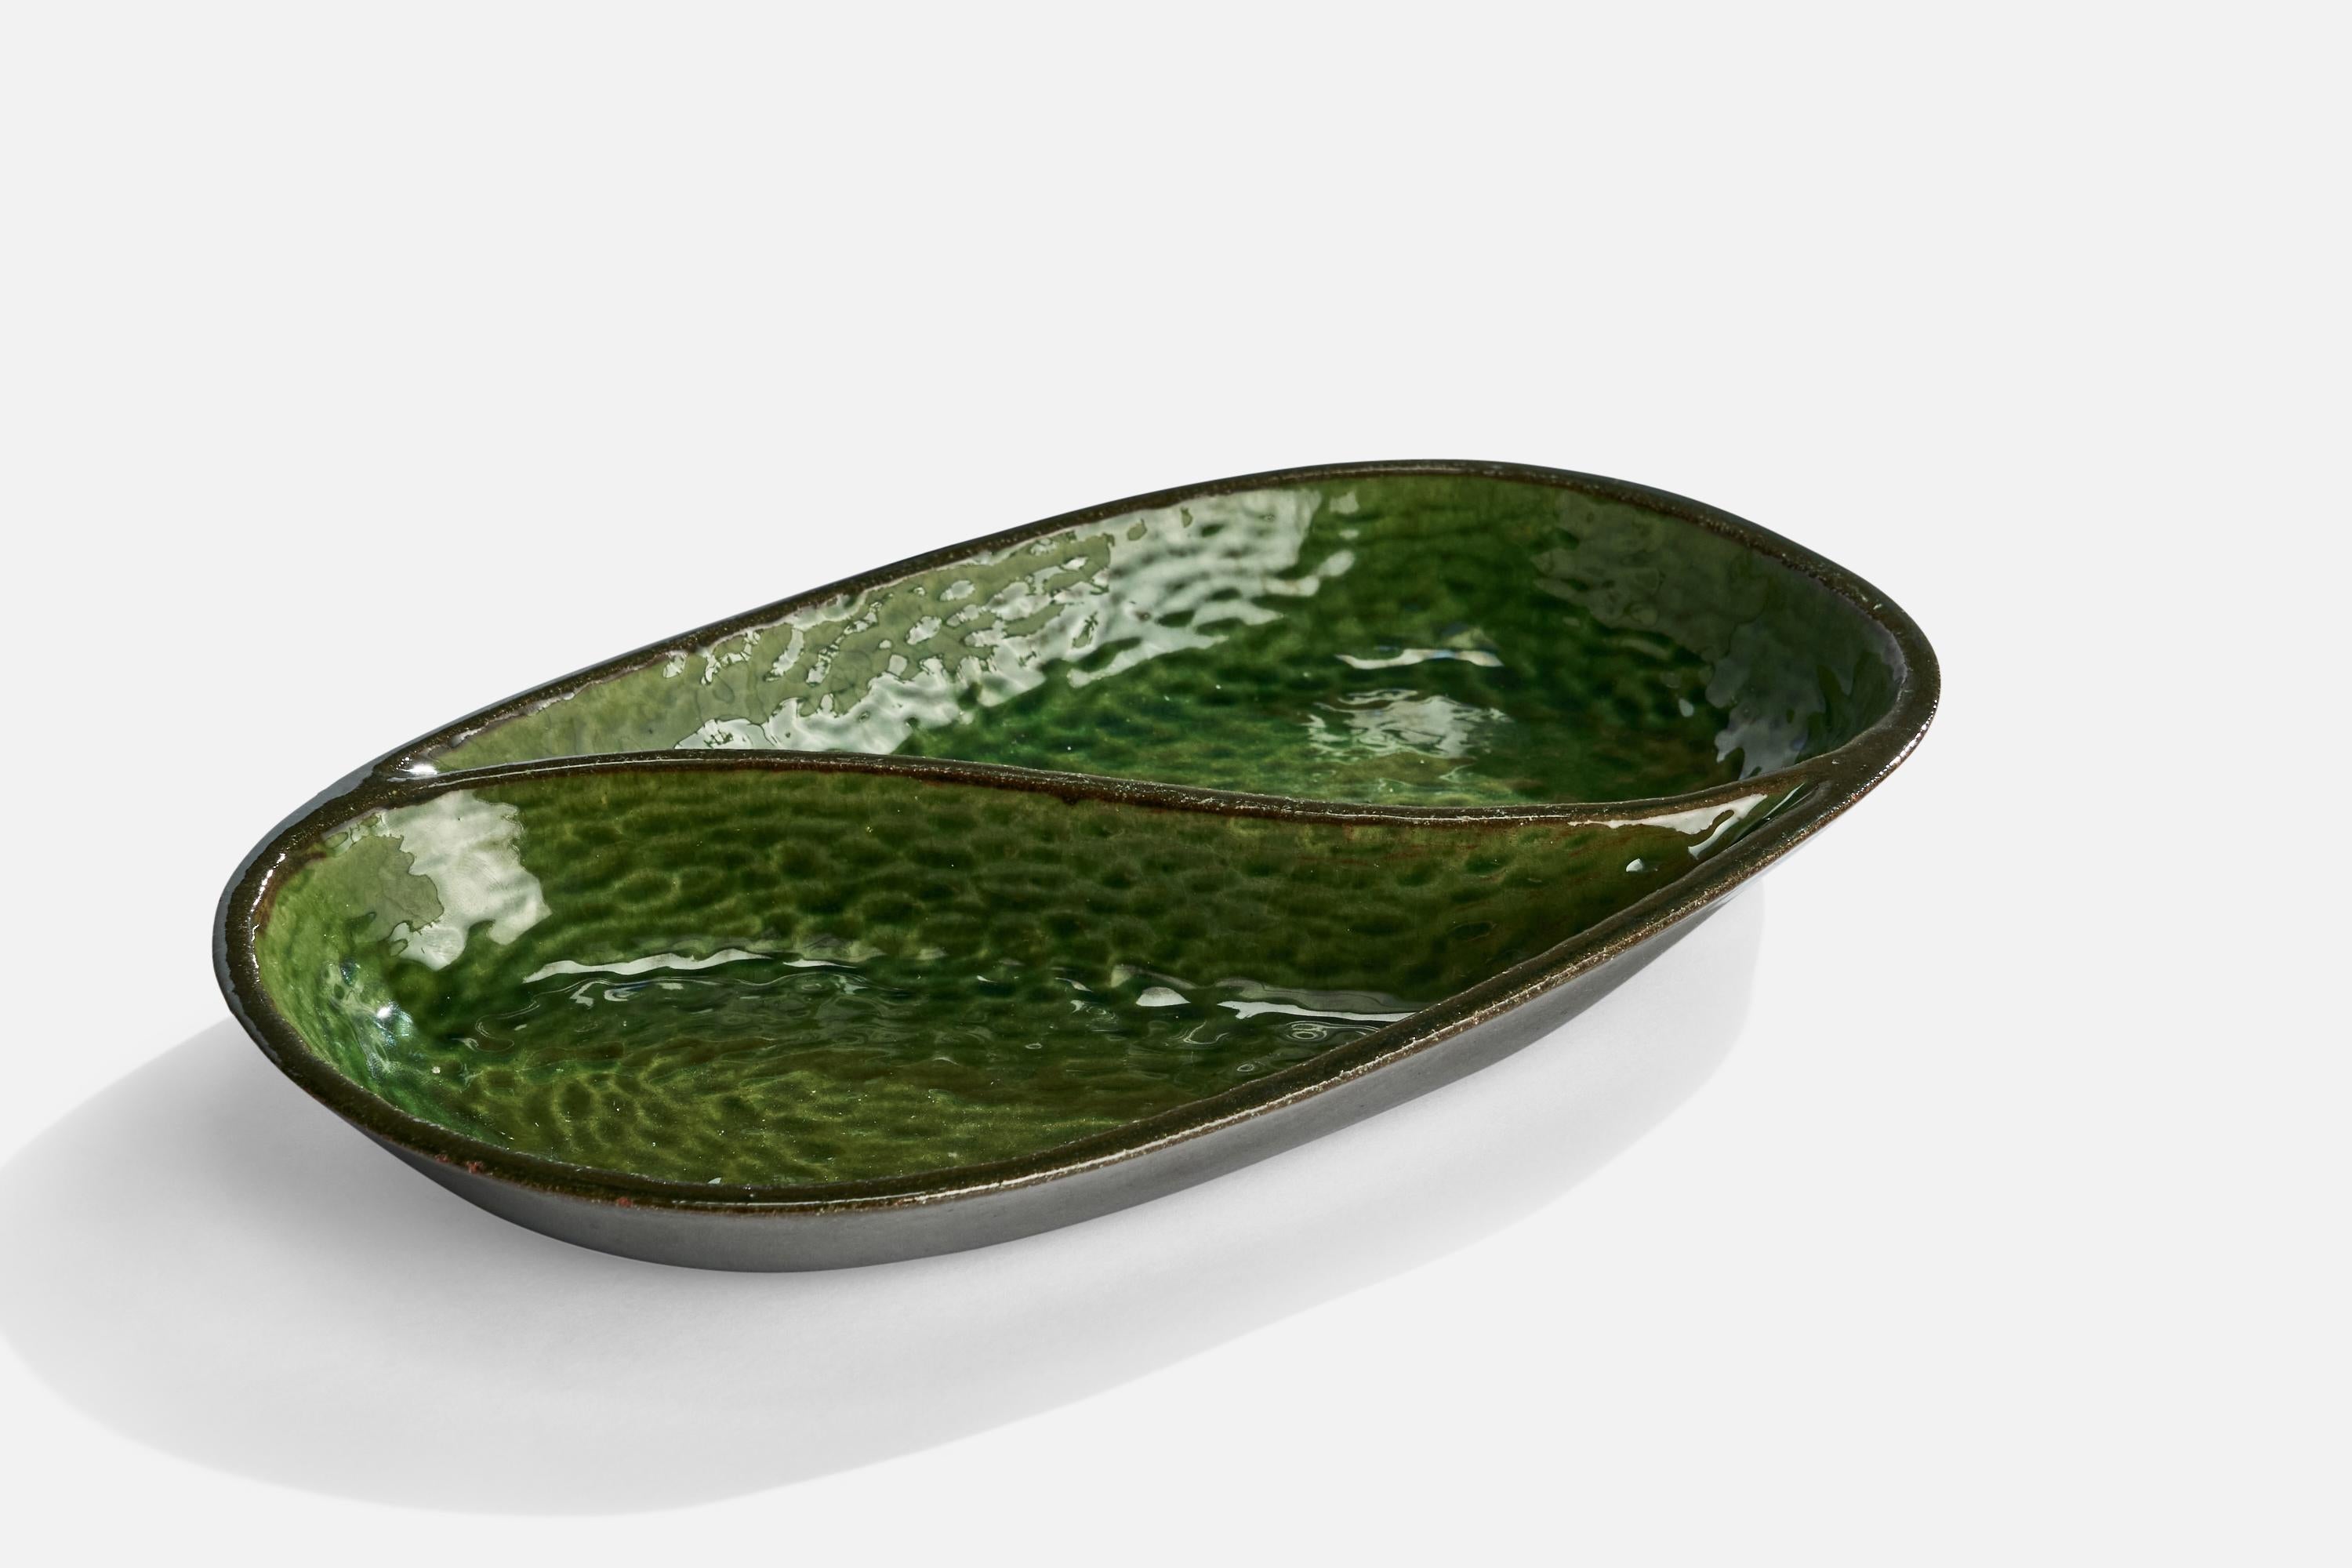 Poche-vide en verre vert conçu et produit par Andersson & Johansson, Höganäs, Suède, vers les années 1940.